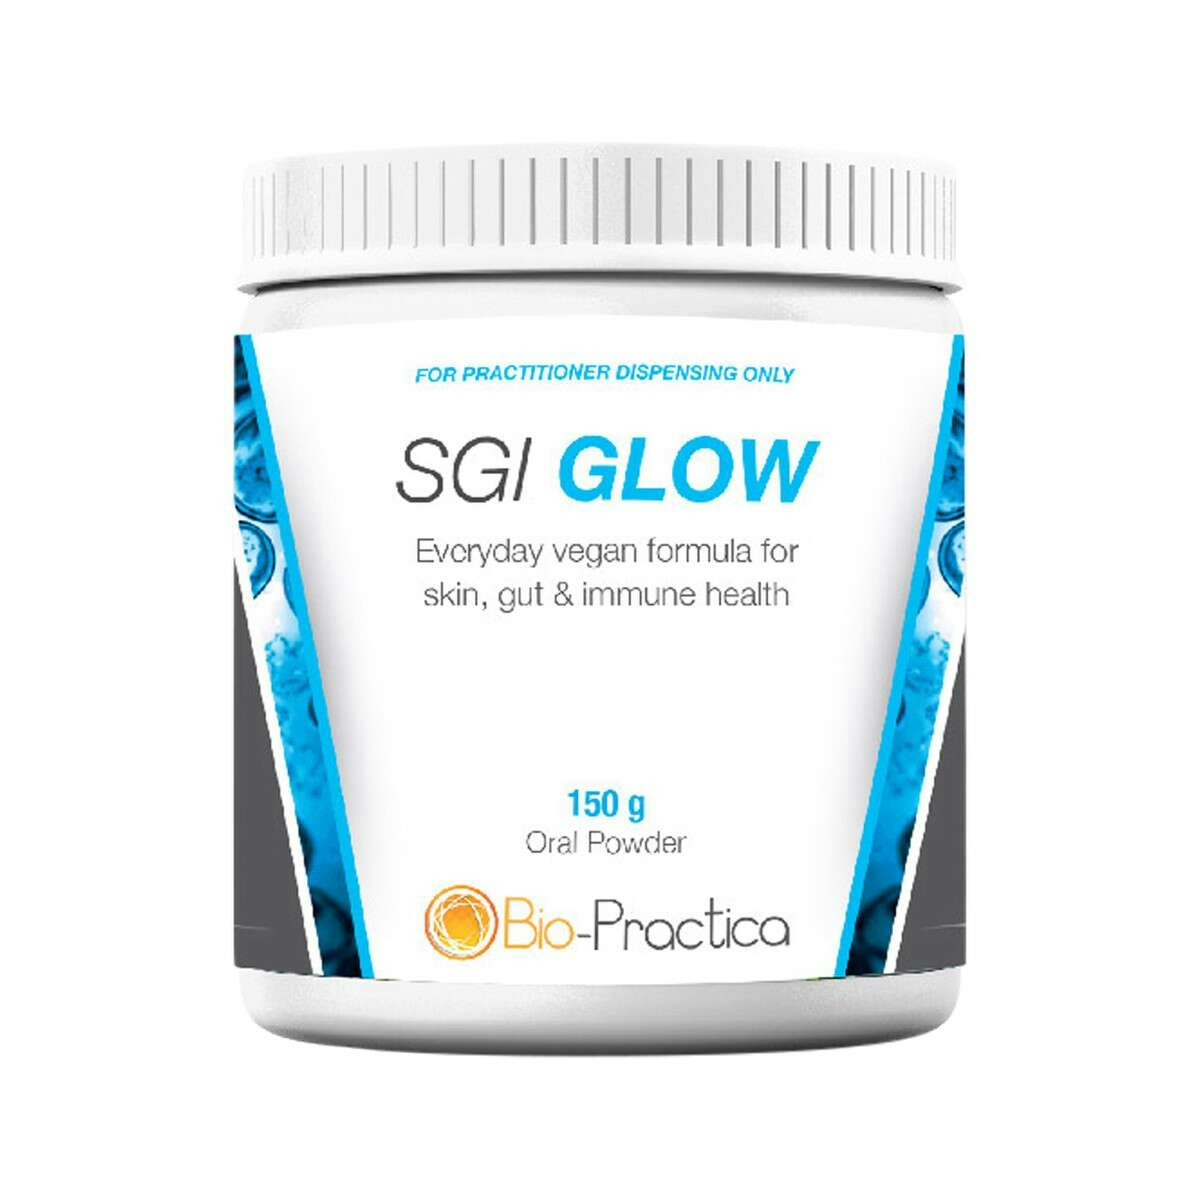 image of Bio-Practica SGI GLOW Oral Powder 150g on white background